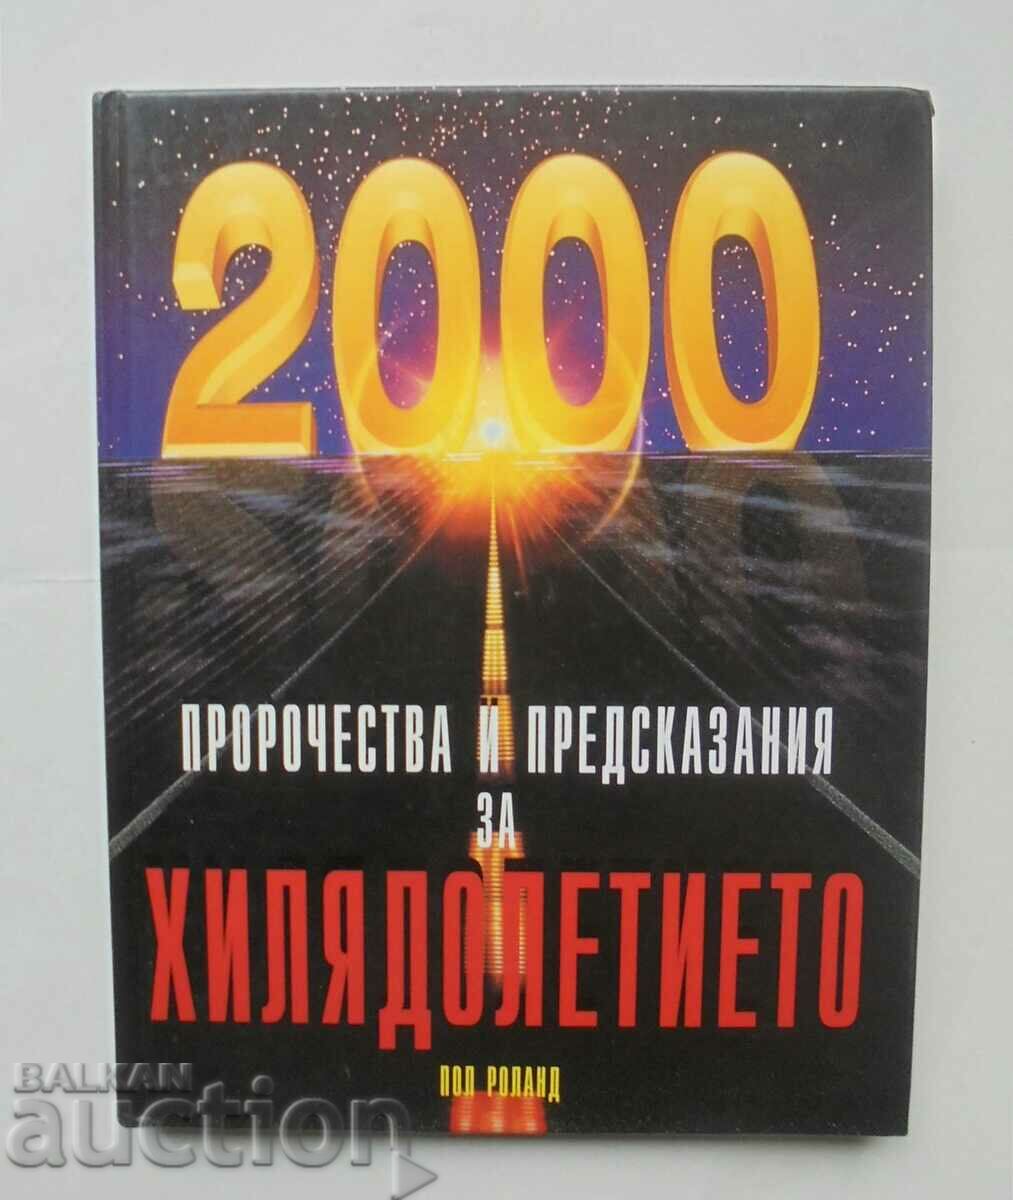 Millennium Prophecies and Predictions Paul Roland 1999